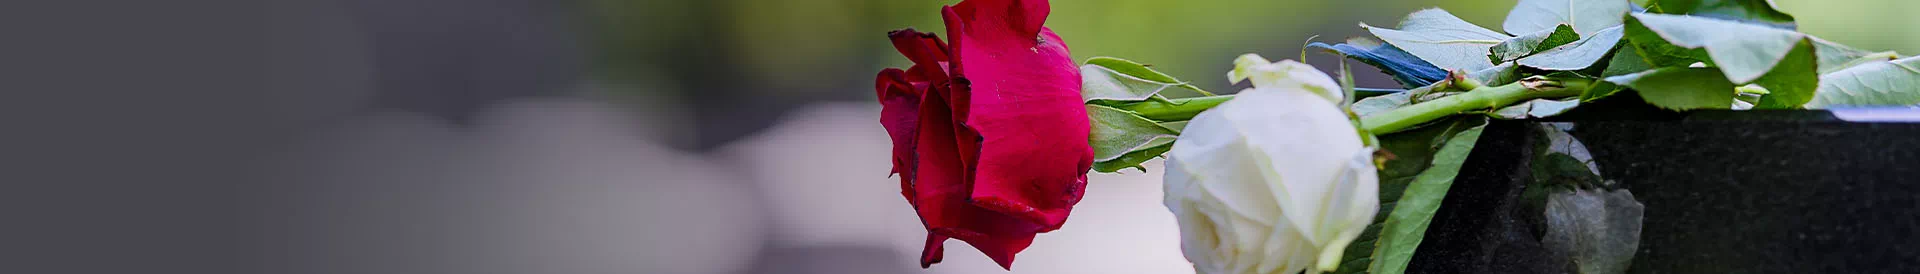 Czerwona oraz biała róża